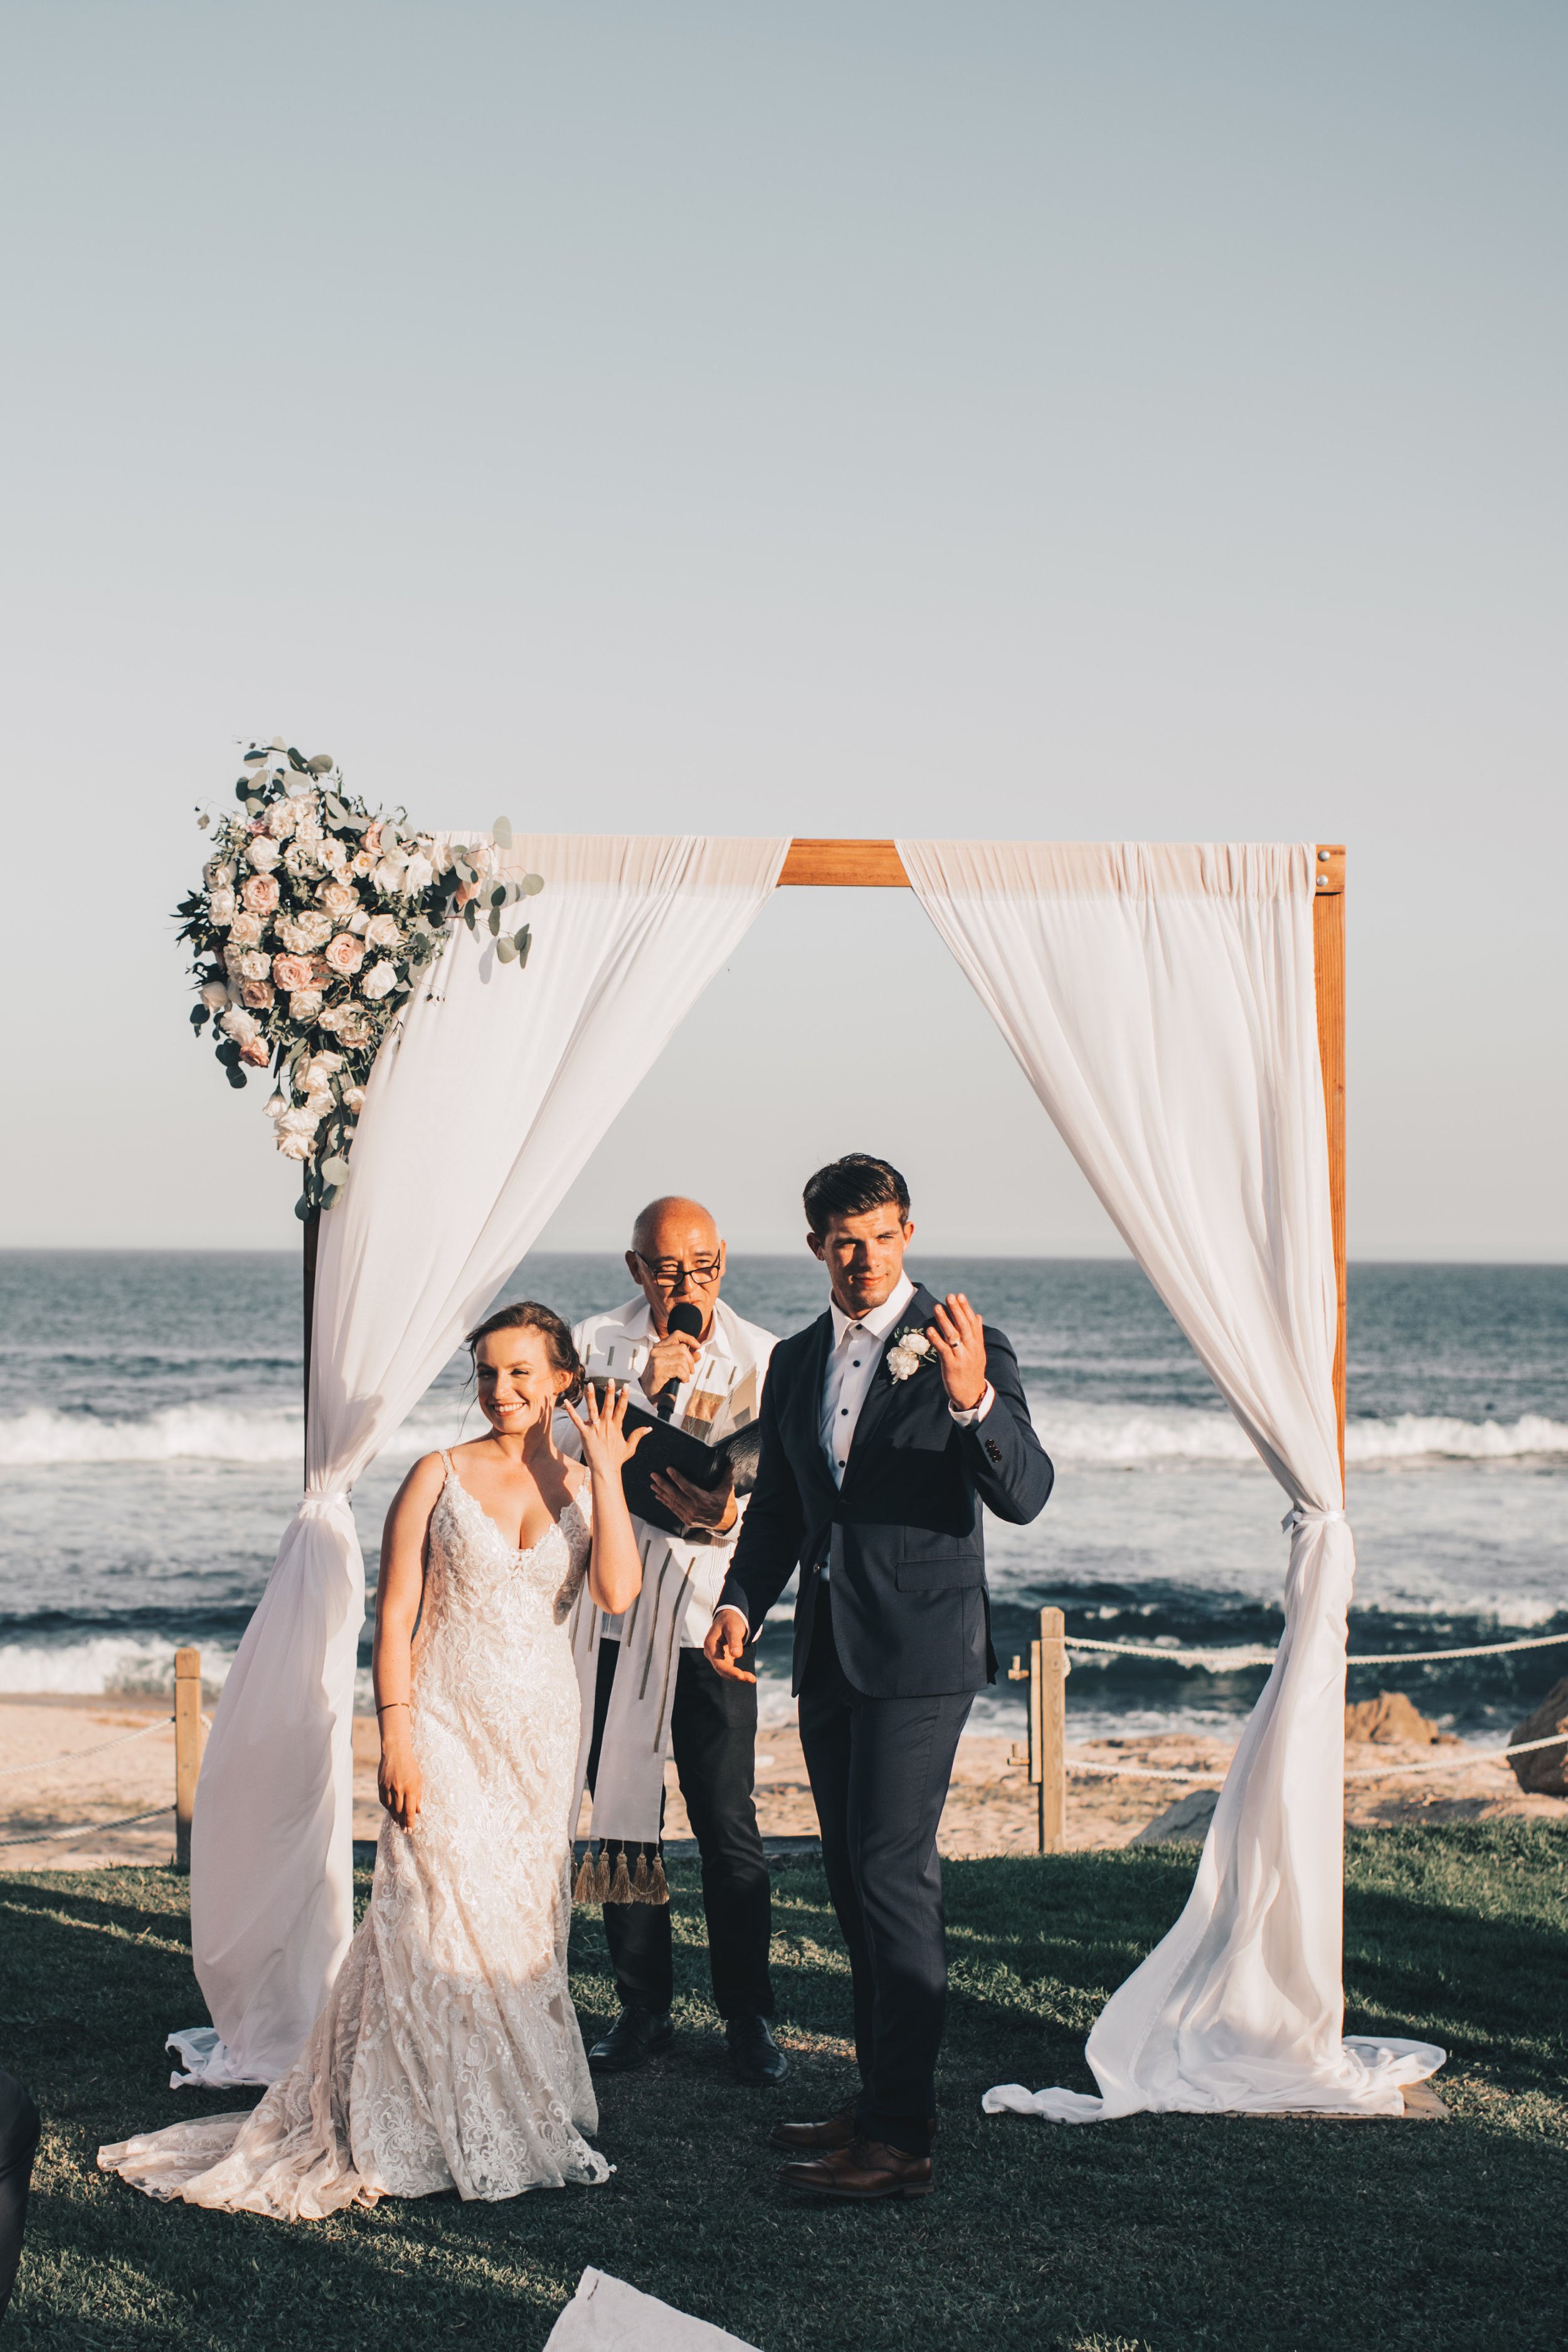 Cabo Wedding, Beach Wedding, Mexico Wedding, Coastal Beach Wedding, Summer Beach Wedding